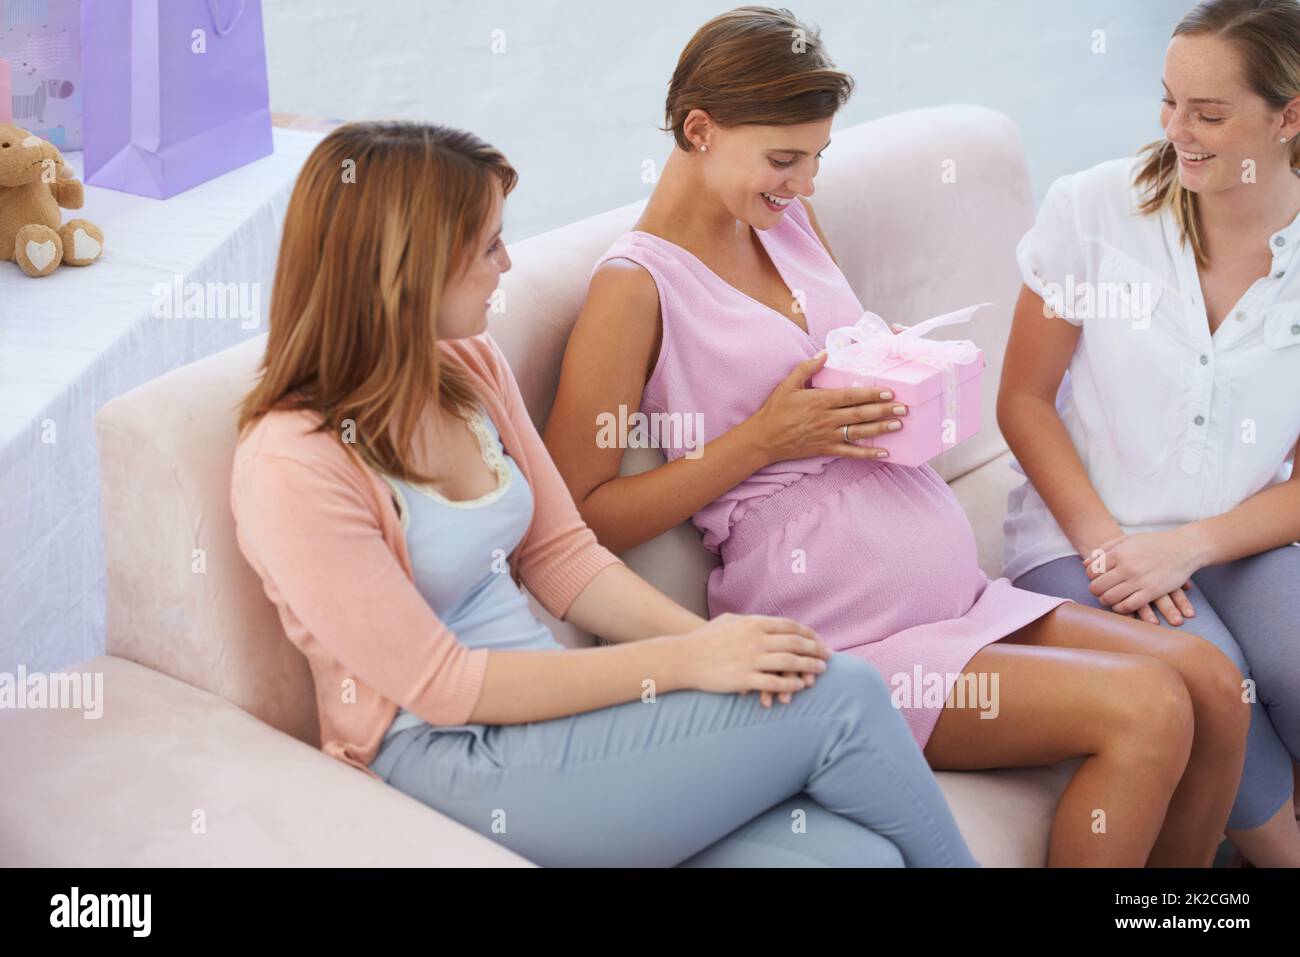 Was ist in der Box. Eine junge Schwangerin erhält Geschenke für ihr kleines Mädchen an der Babydusche. Stockfoto